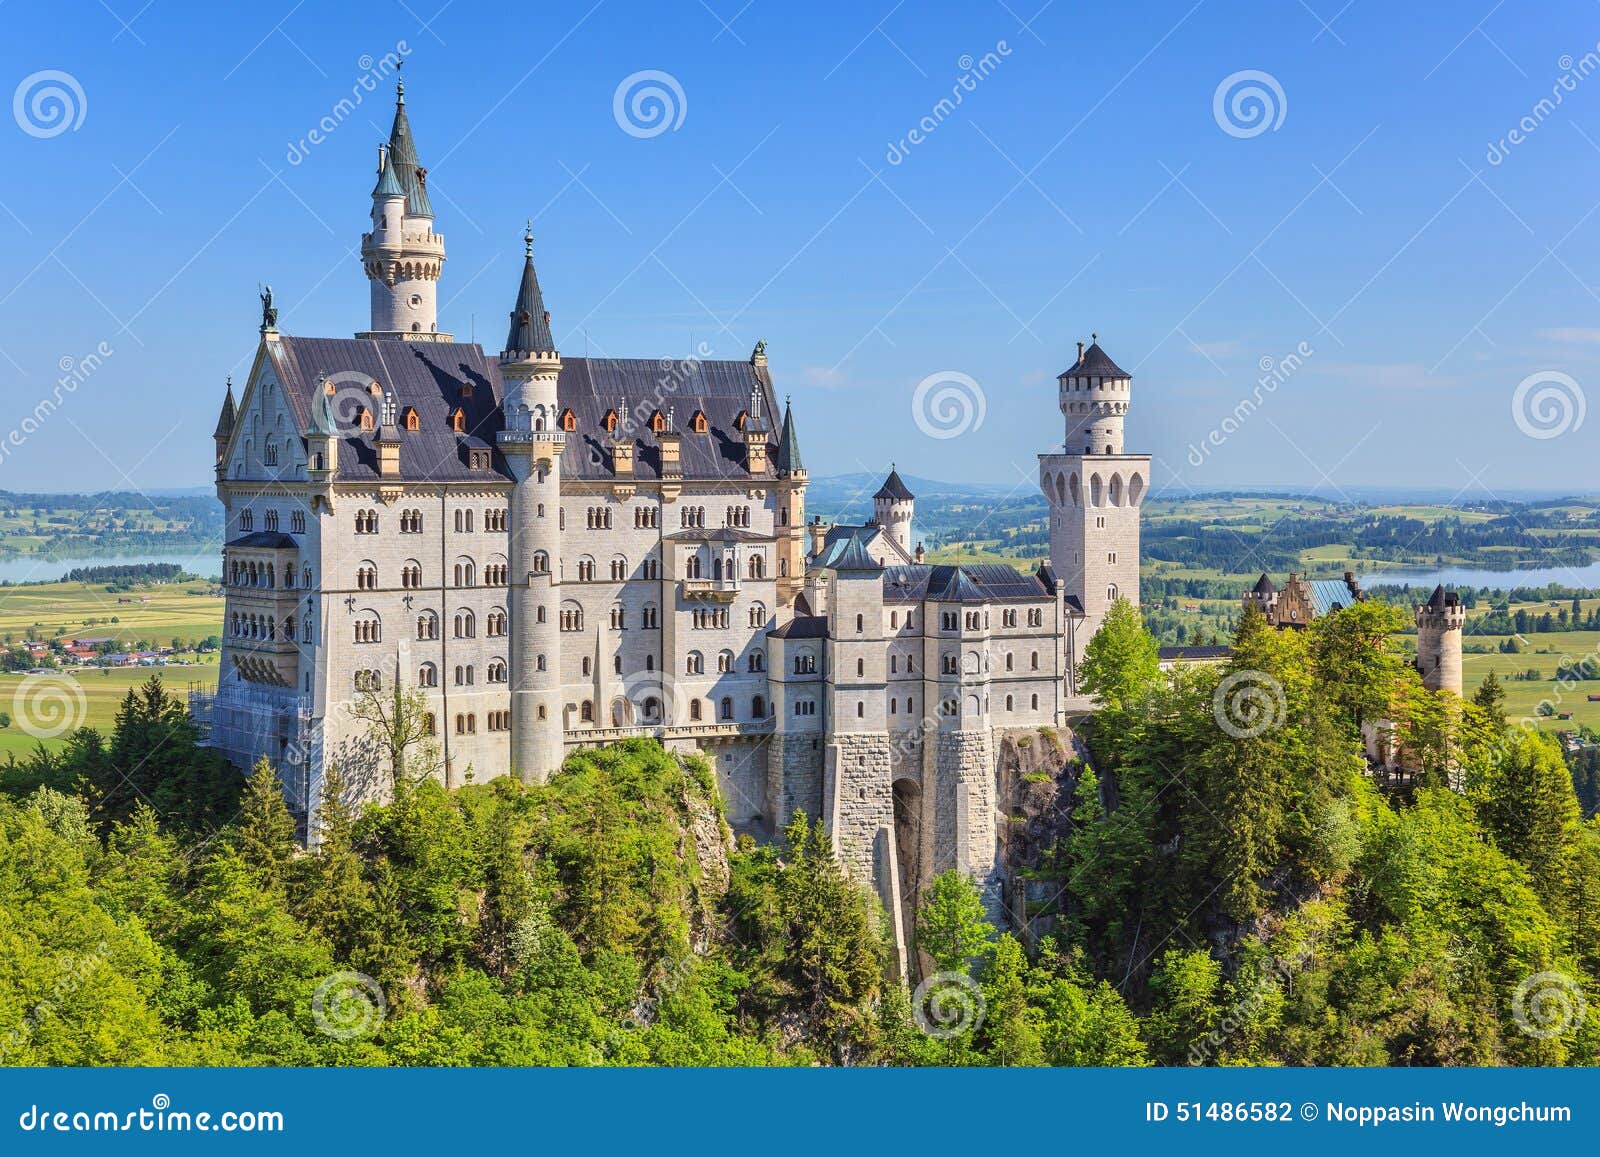 neuschwanstein castle - fussen - germany